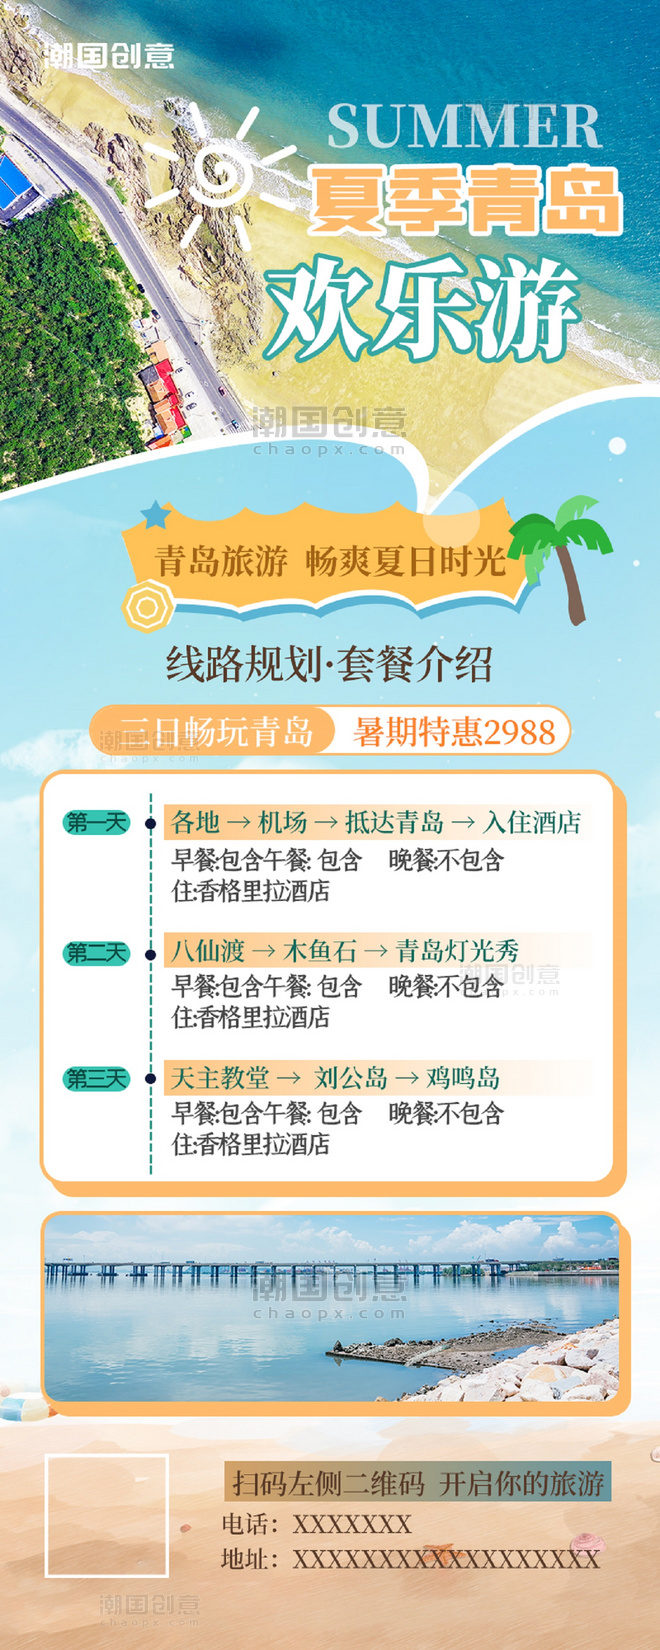 夏季夏天青岛出游旅行海报蓝色度假促销营销长图